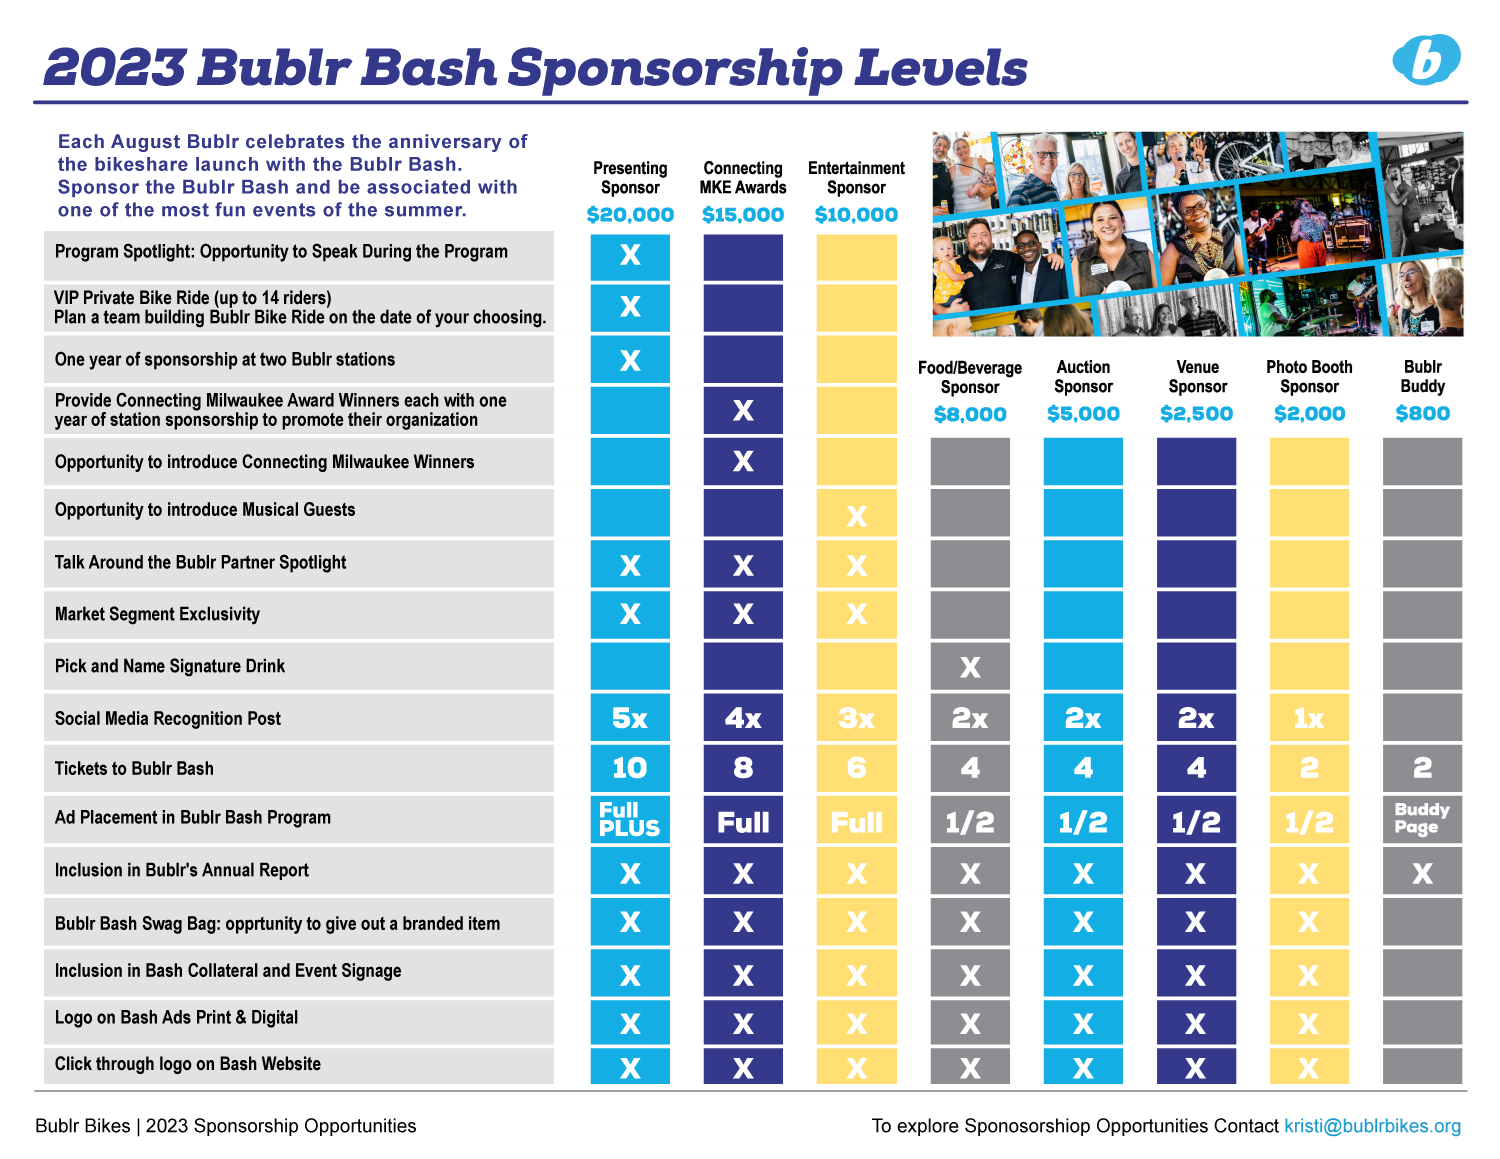 Bublr Bash 2023 Sponsorship Levels